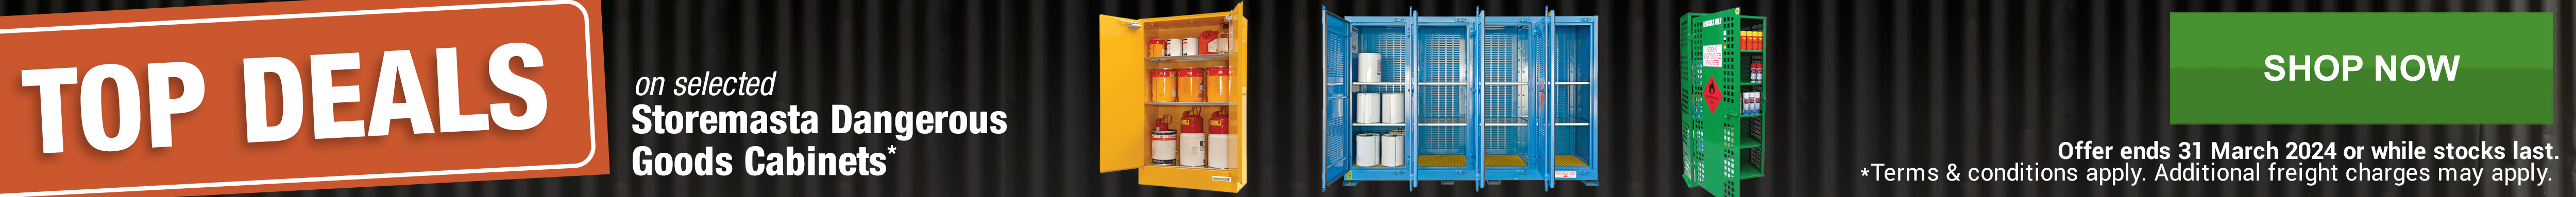 Top Deals on selected Storemasta Dangerous Goods Cabinets*